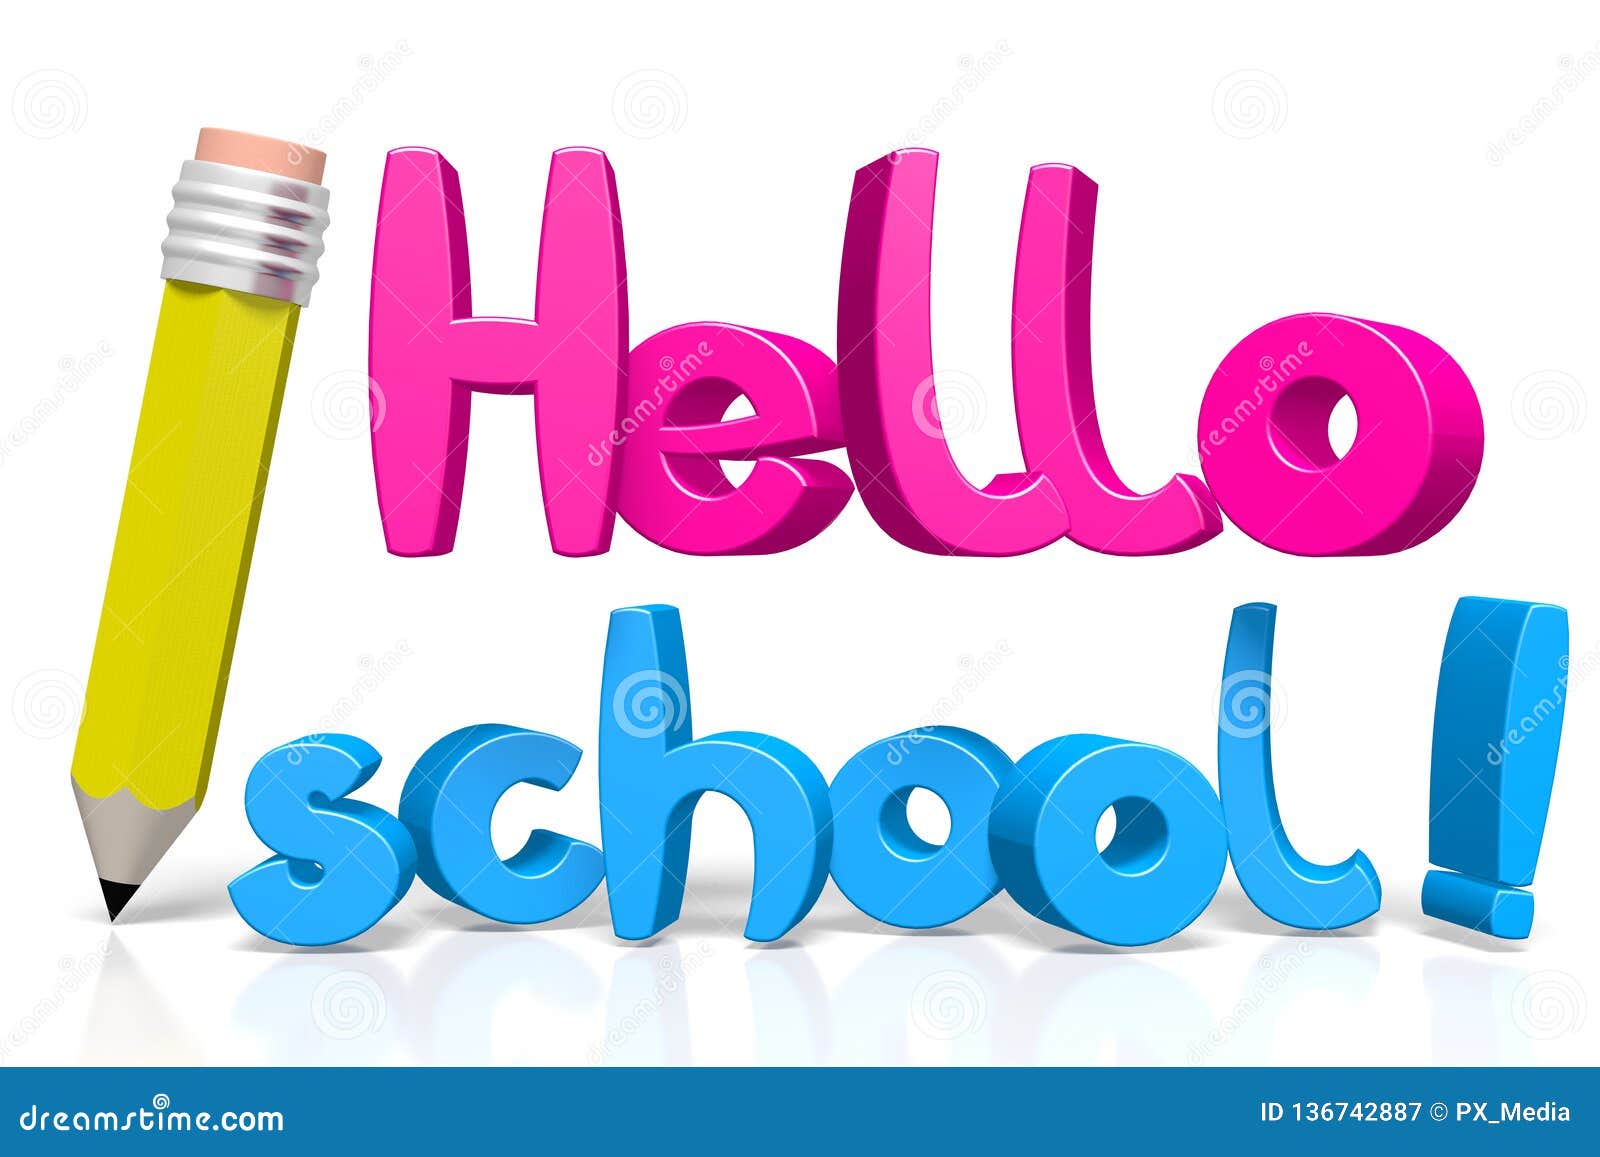 De volta ao conceito da escola - olá! escola - letras coloridas, fundo branco - grandes para assuntos como a educação etc.